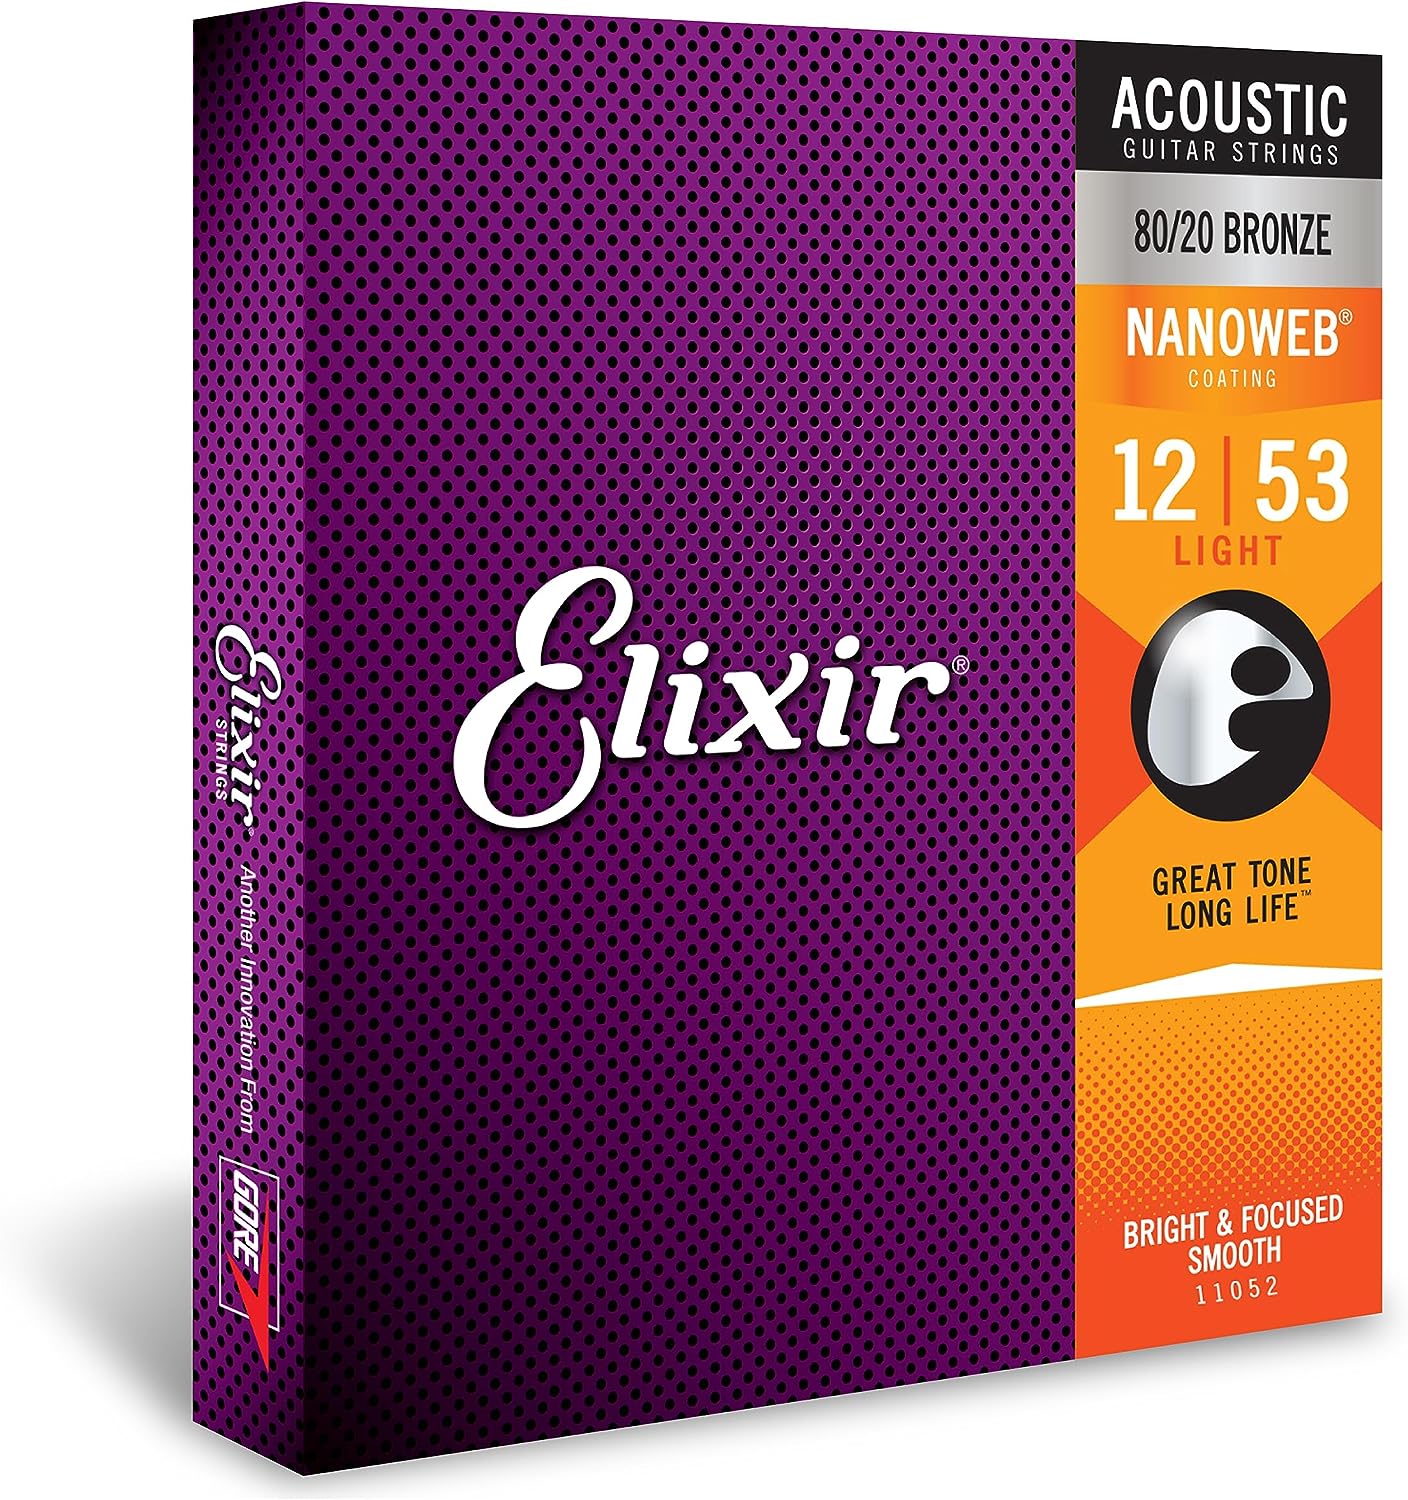 Bronze 80/20 Elixir Strings Acoustic Guitar Strings with NANOWEB Coating, Light 012-053, Custom Light 011-052, Extra Light 010-047 